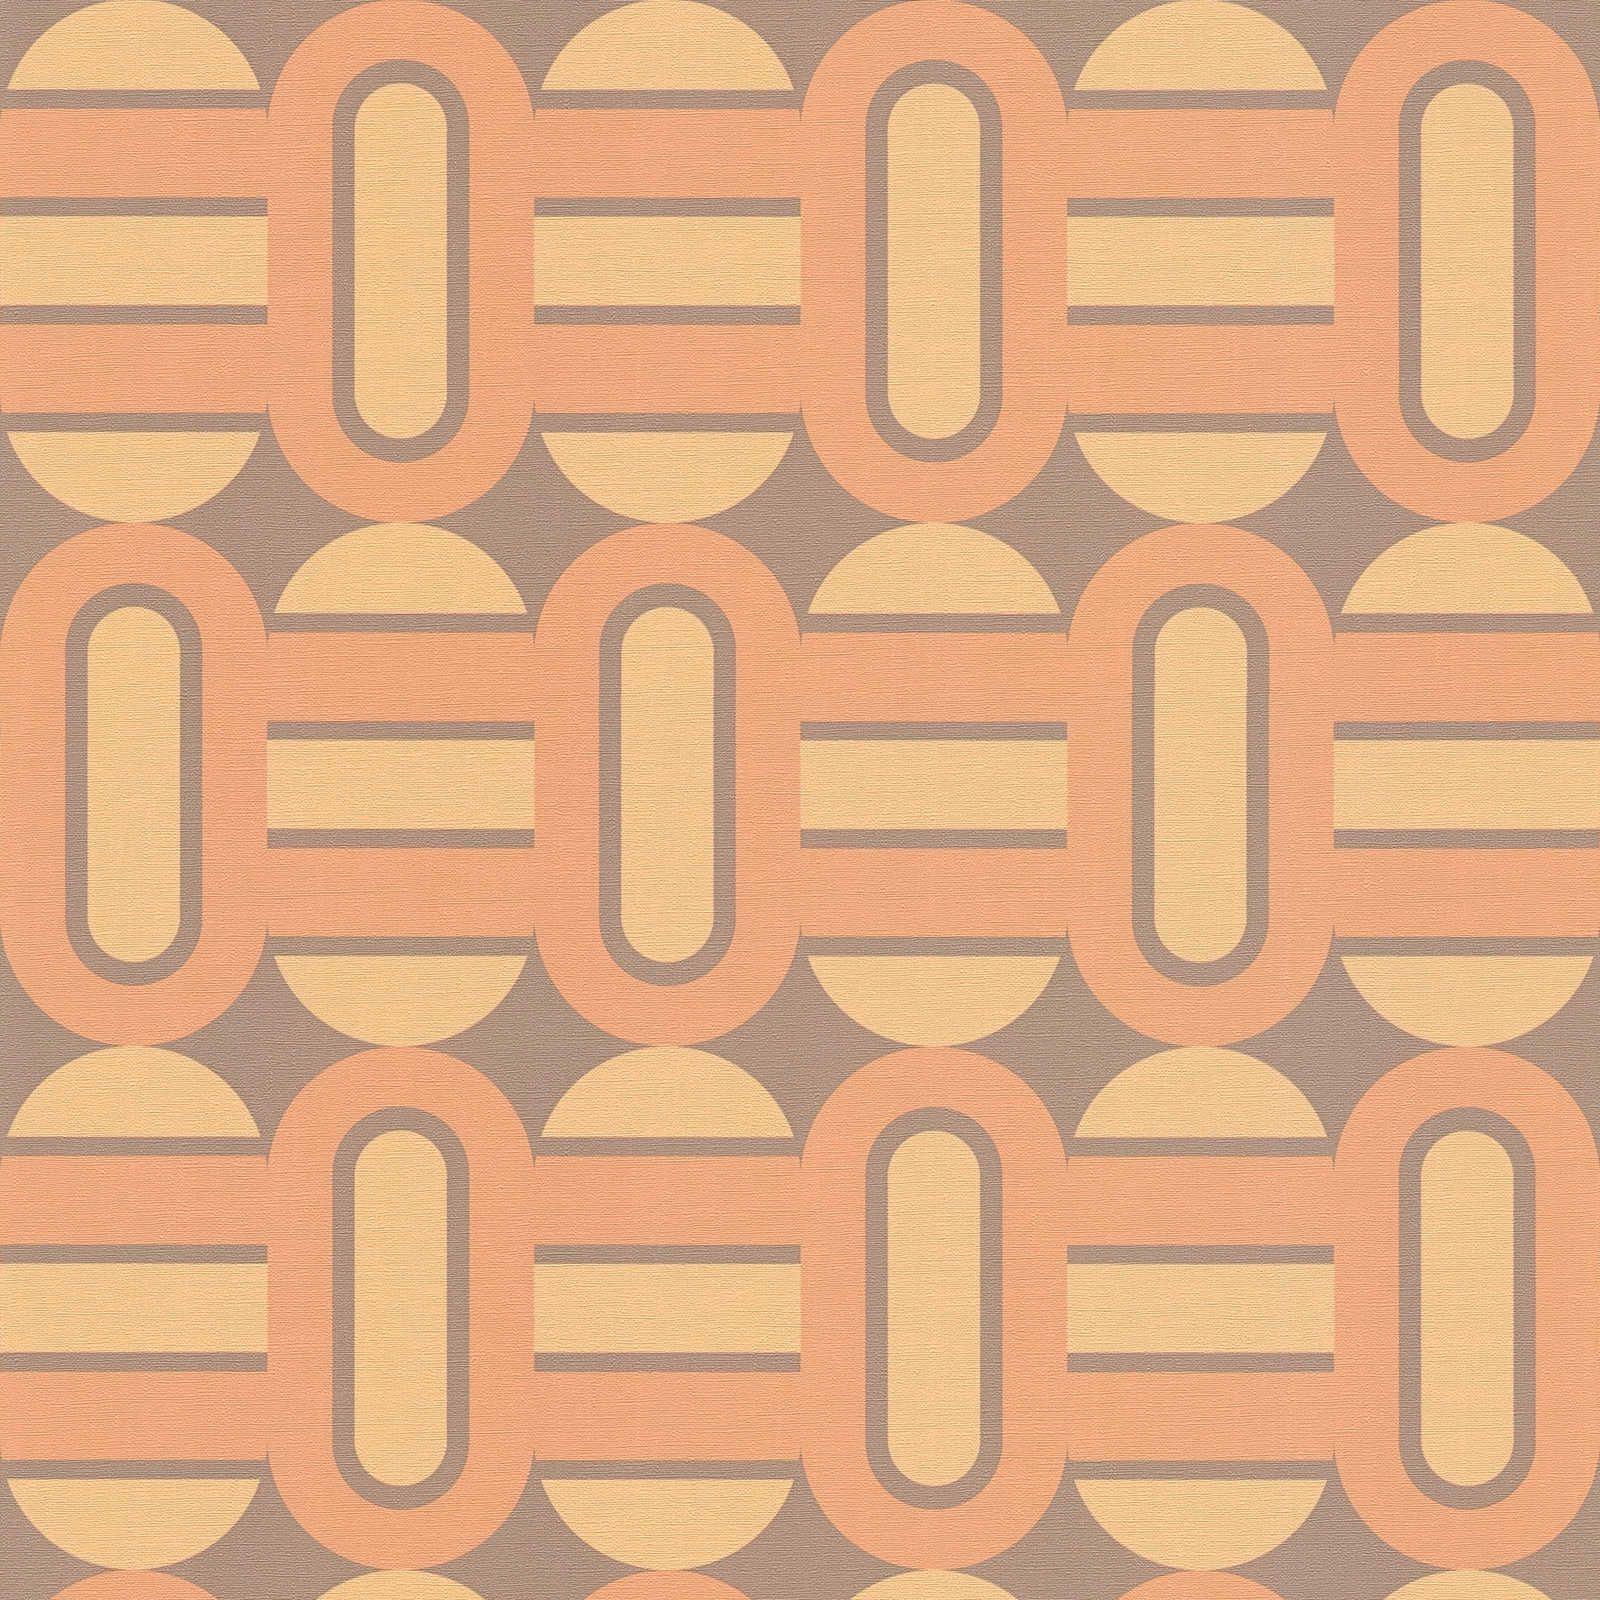             Retro Vliestapete verziert mit Ovalen und Balken in warmen Farben – Braun, Gelb, Orange
        